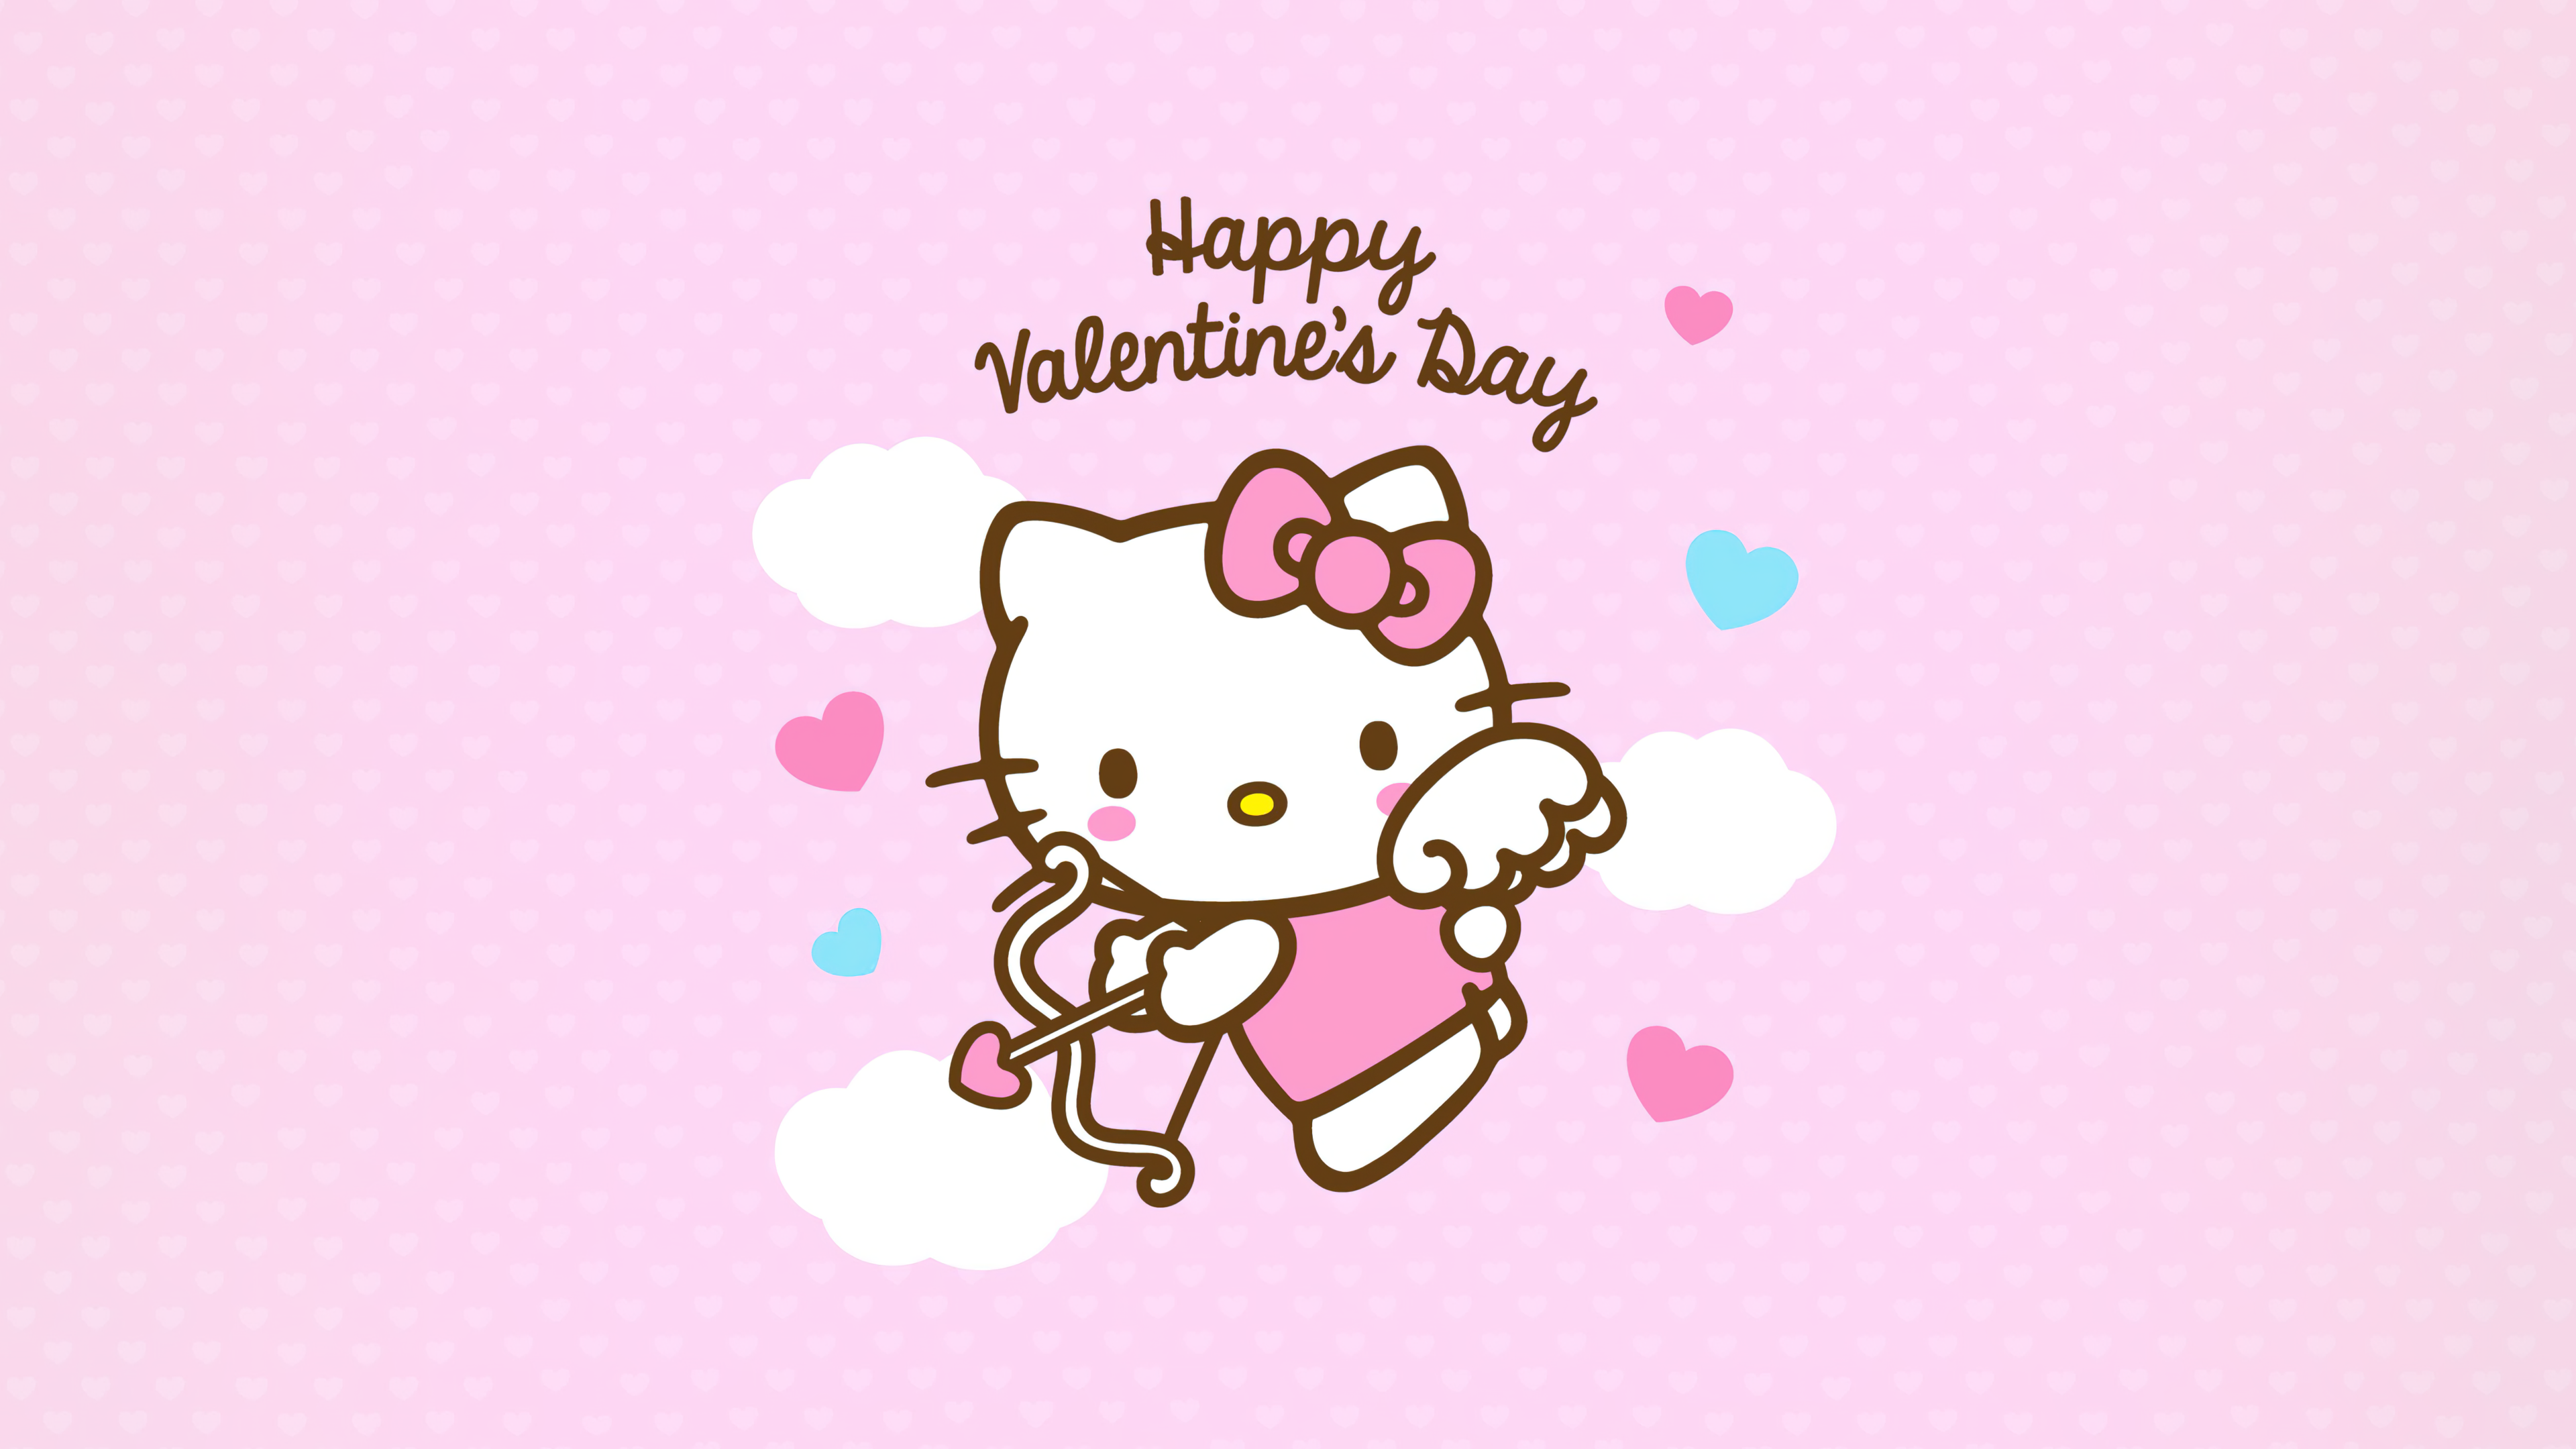 Happy Valentine's Day Wallpaper 4K, Hello Kitty, Celebrations Valentine's Day